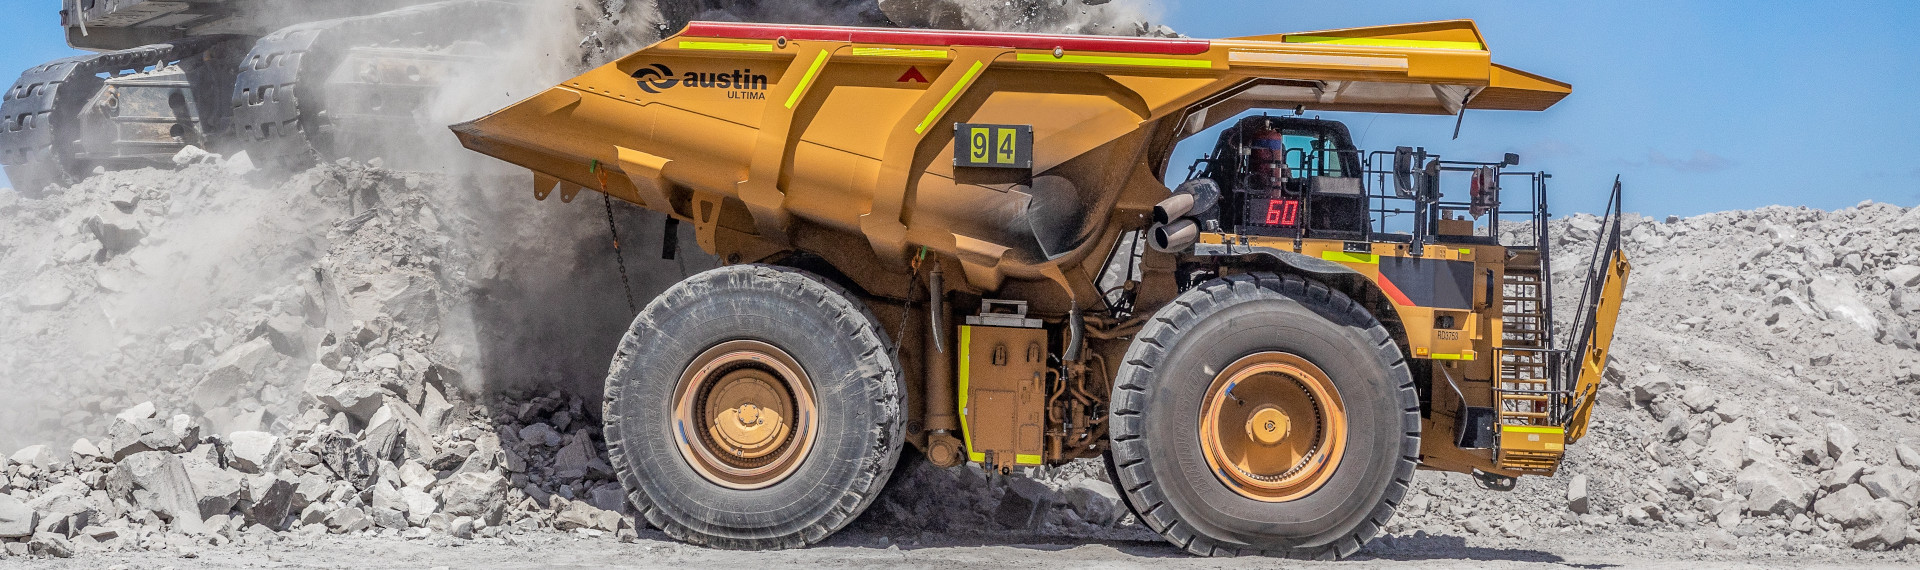 El camión minero de grandes dimensiones de Austin, que pesa un 25% menos gracias a Hardox® 500 Tuf